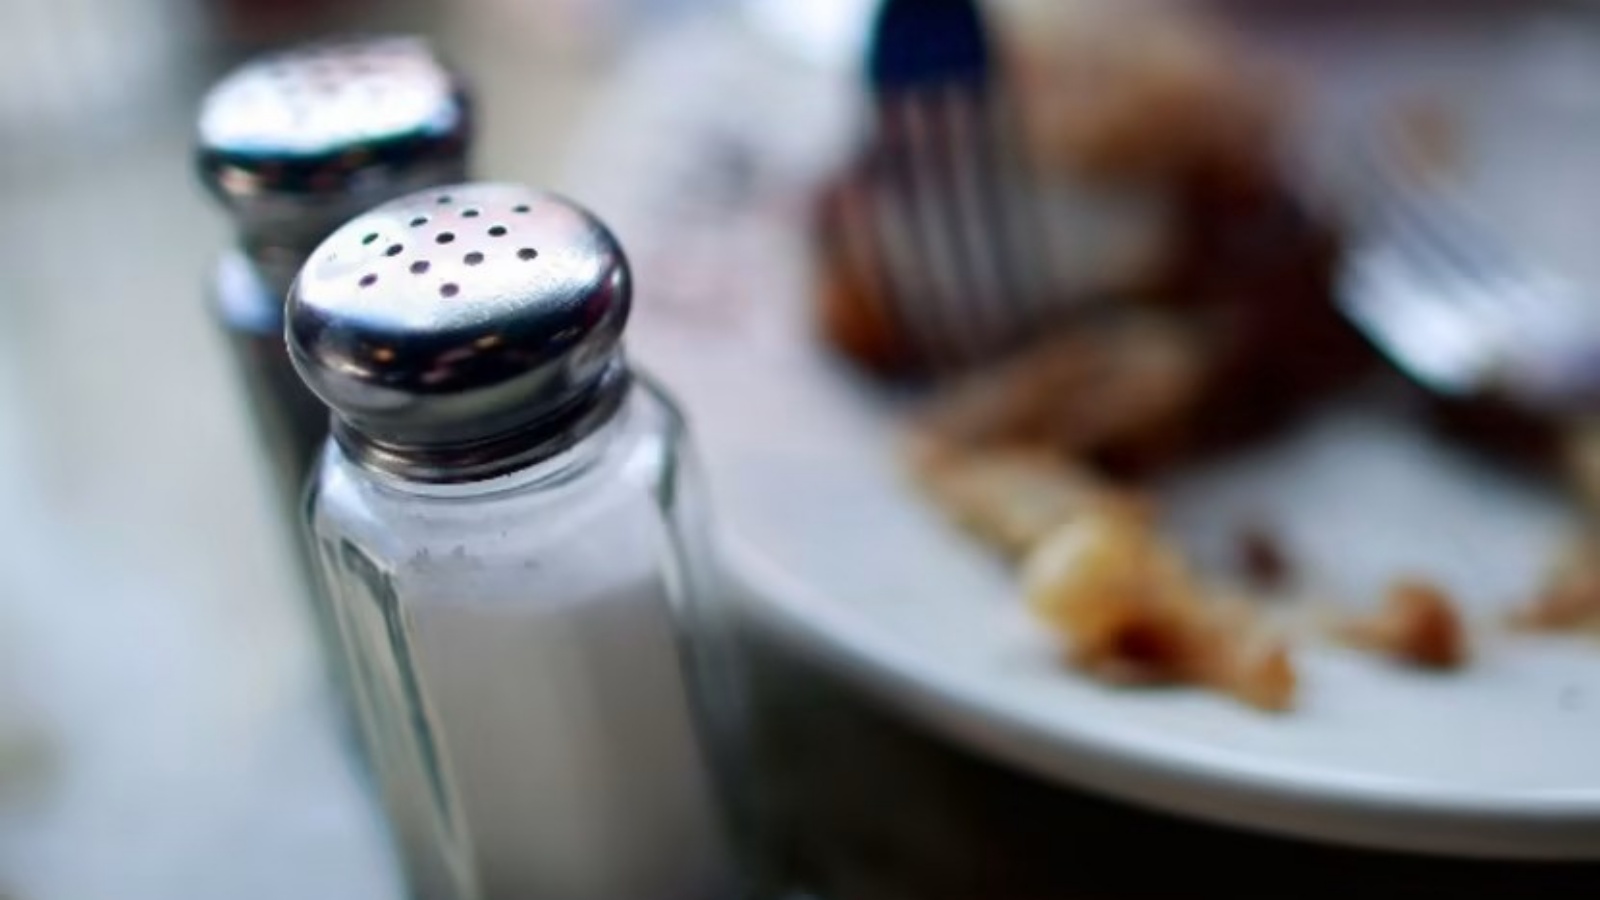 إضافة كميات كبيرة من الملح إلى الأطعمة يرتبط بزيادة خطر الإصابة بأمراض الكلى المزمنة